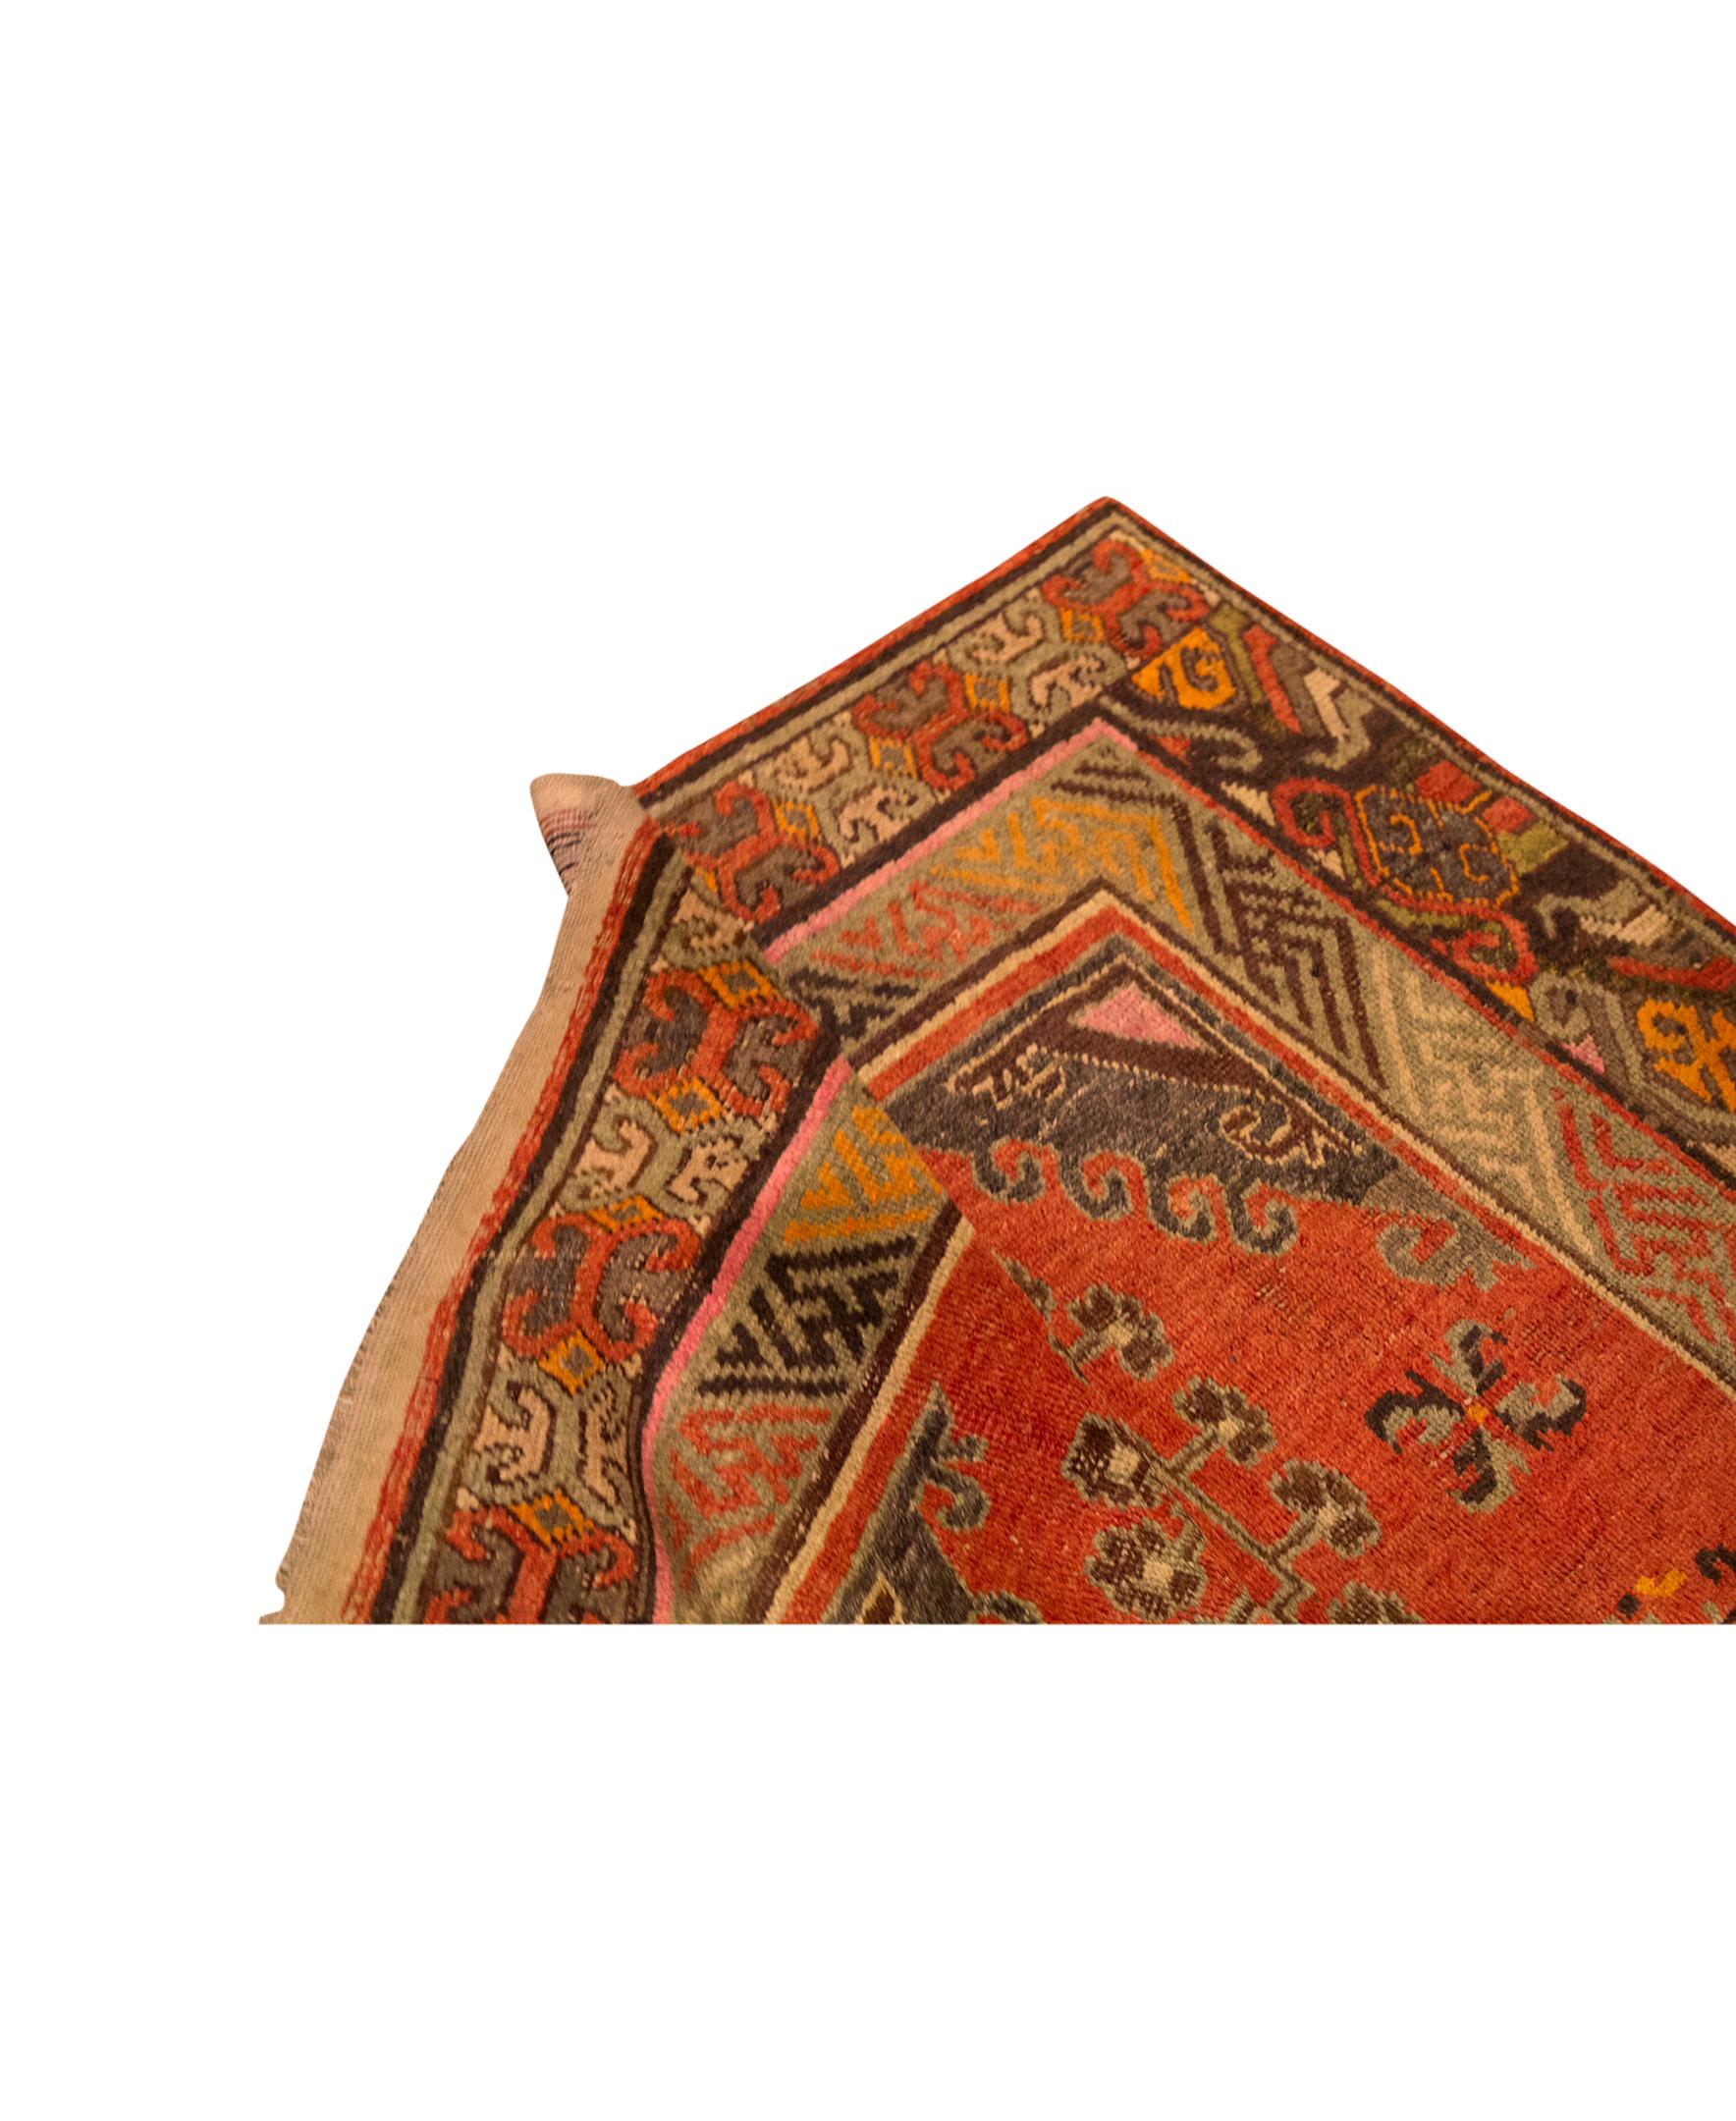 Traditionell handgewebt Luxus Wolle Antik Chinesisch Rot (Khotan) im Angebot